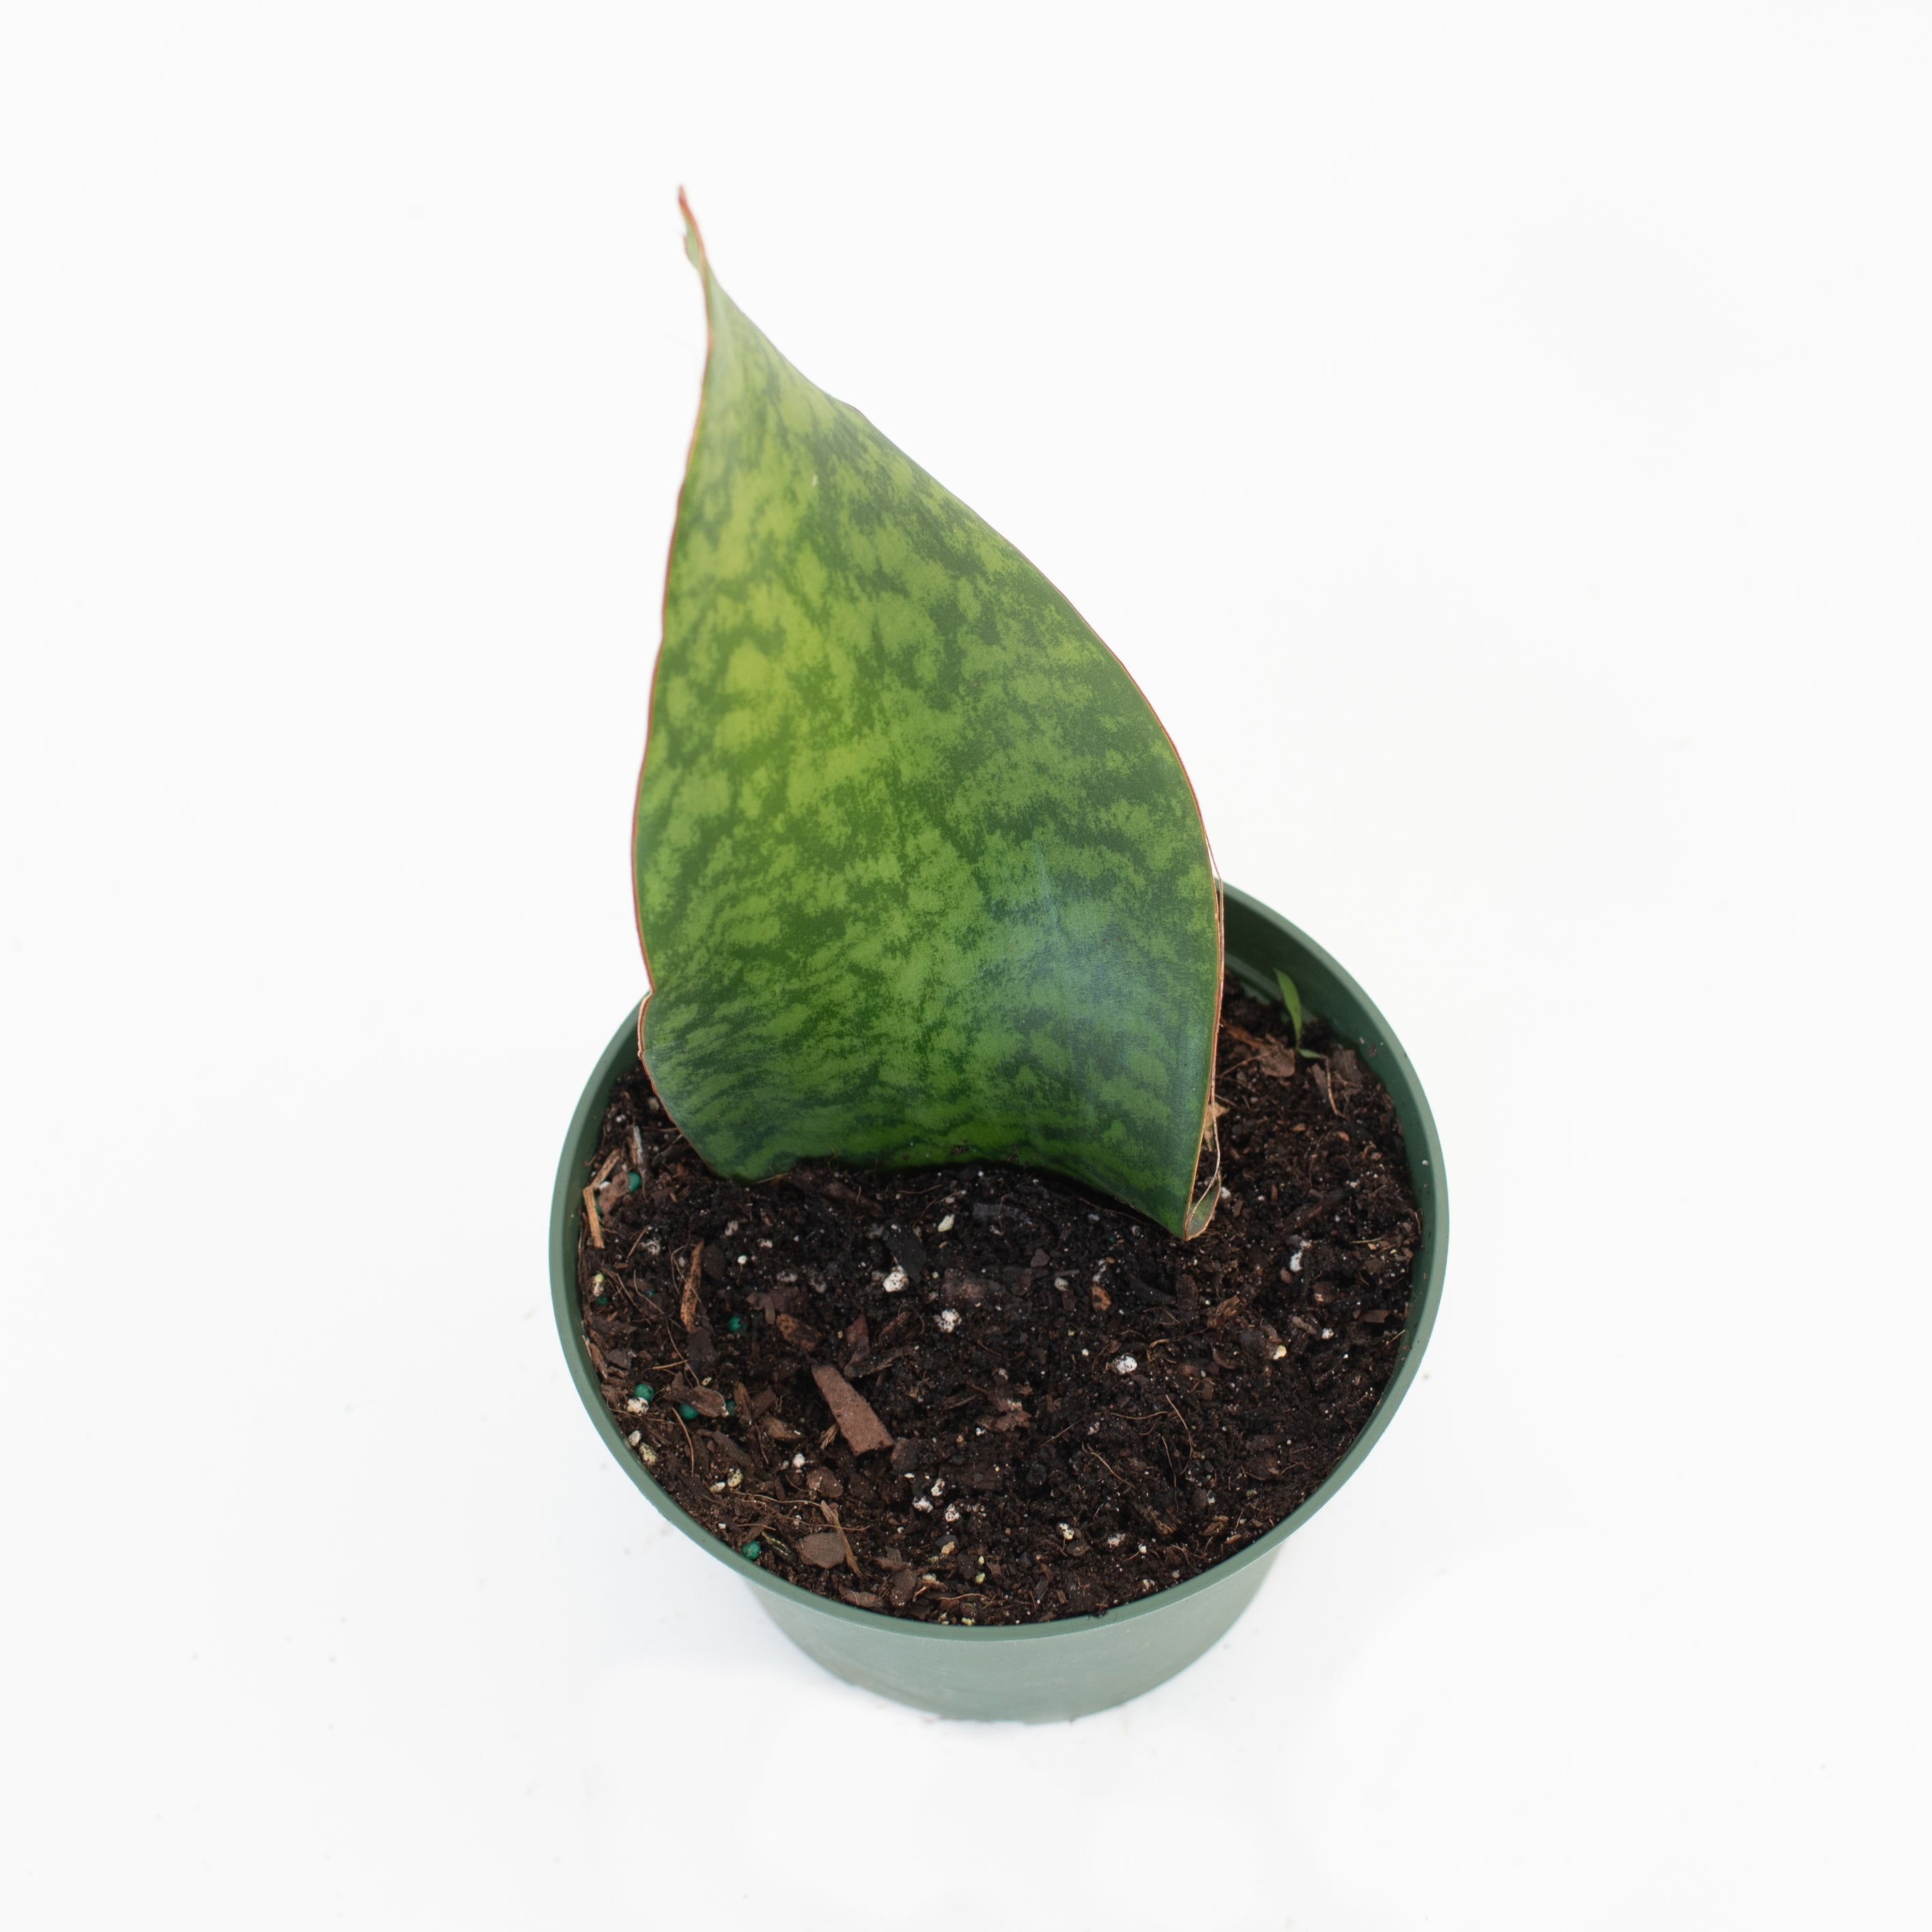 6” Sansevieria “Masoniana” Plant